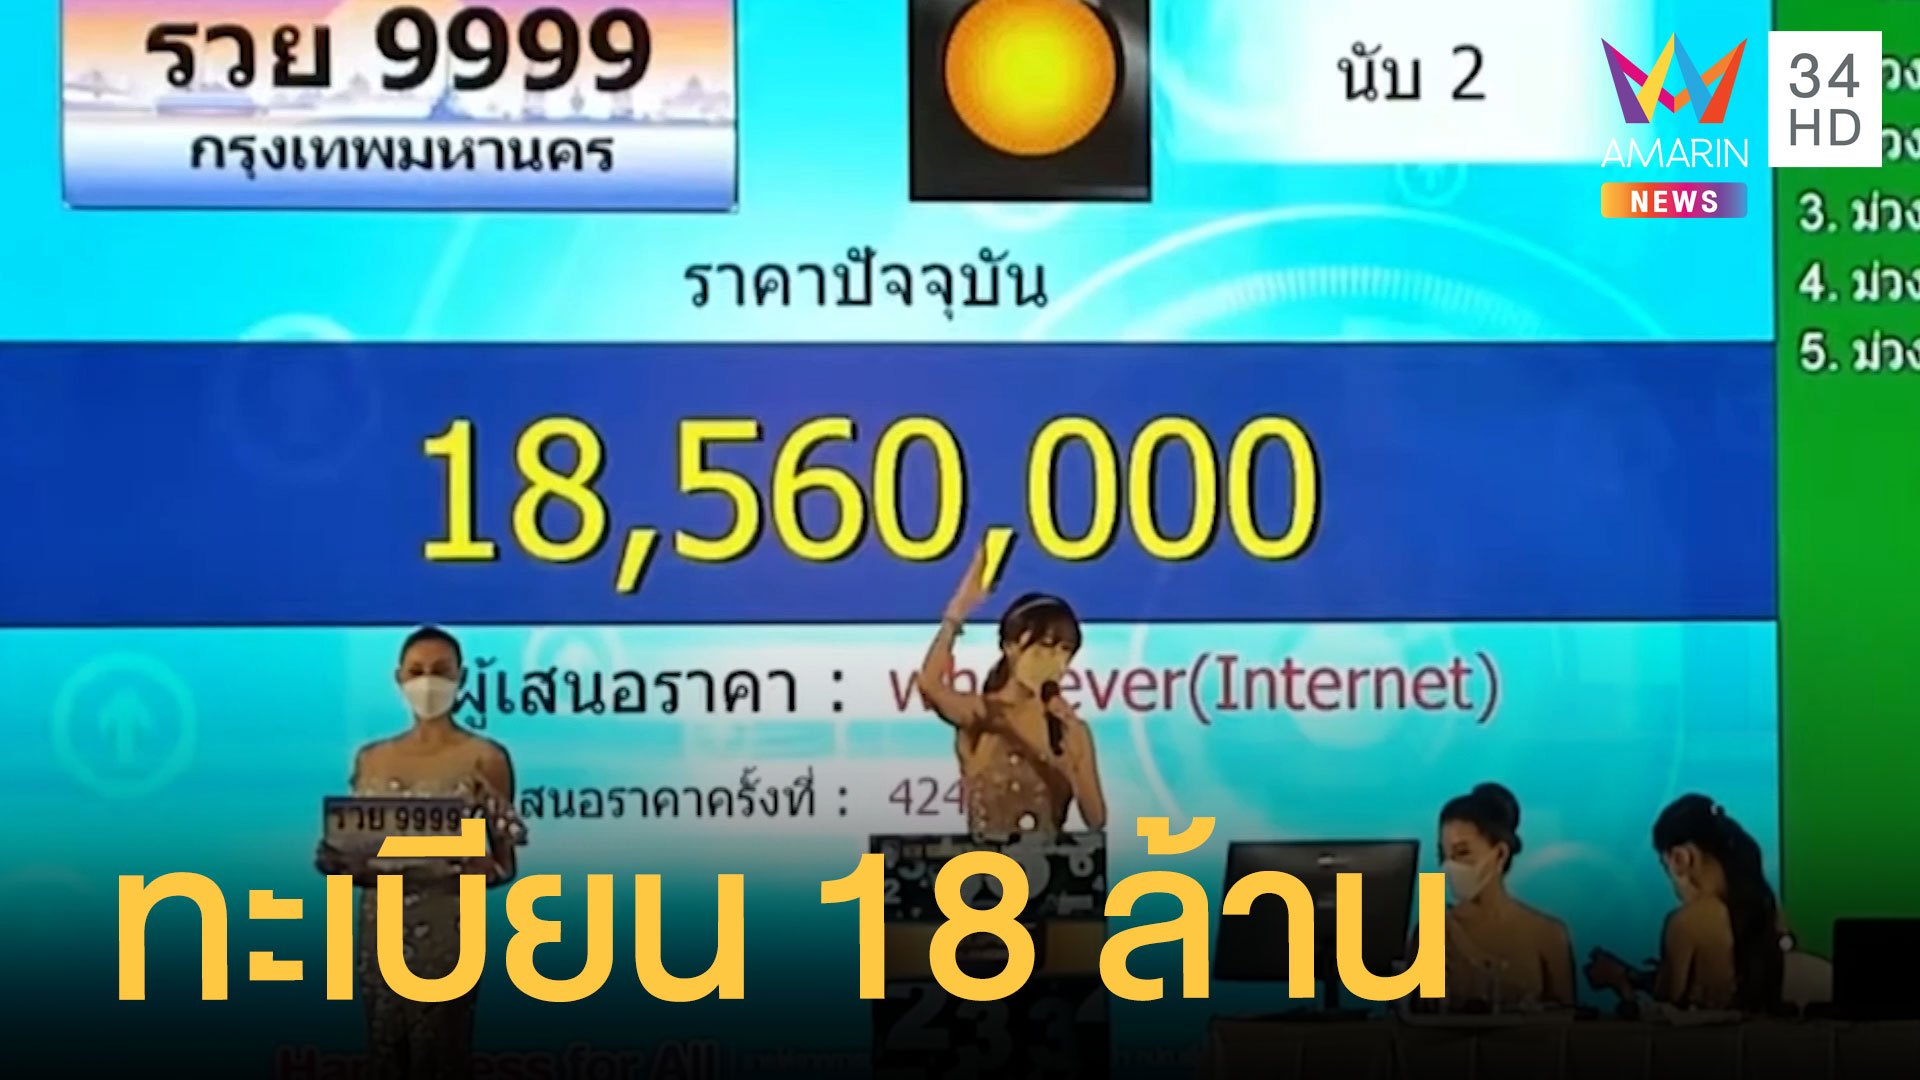 หนุ่มนิรนามประมูล "รวย 9999" ราคาเฉียด 19 ล้าน | ข่าวอรุณอมรินทร์ | 8 เม.ย. 65 | AMARIN TVHD34